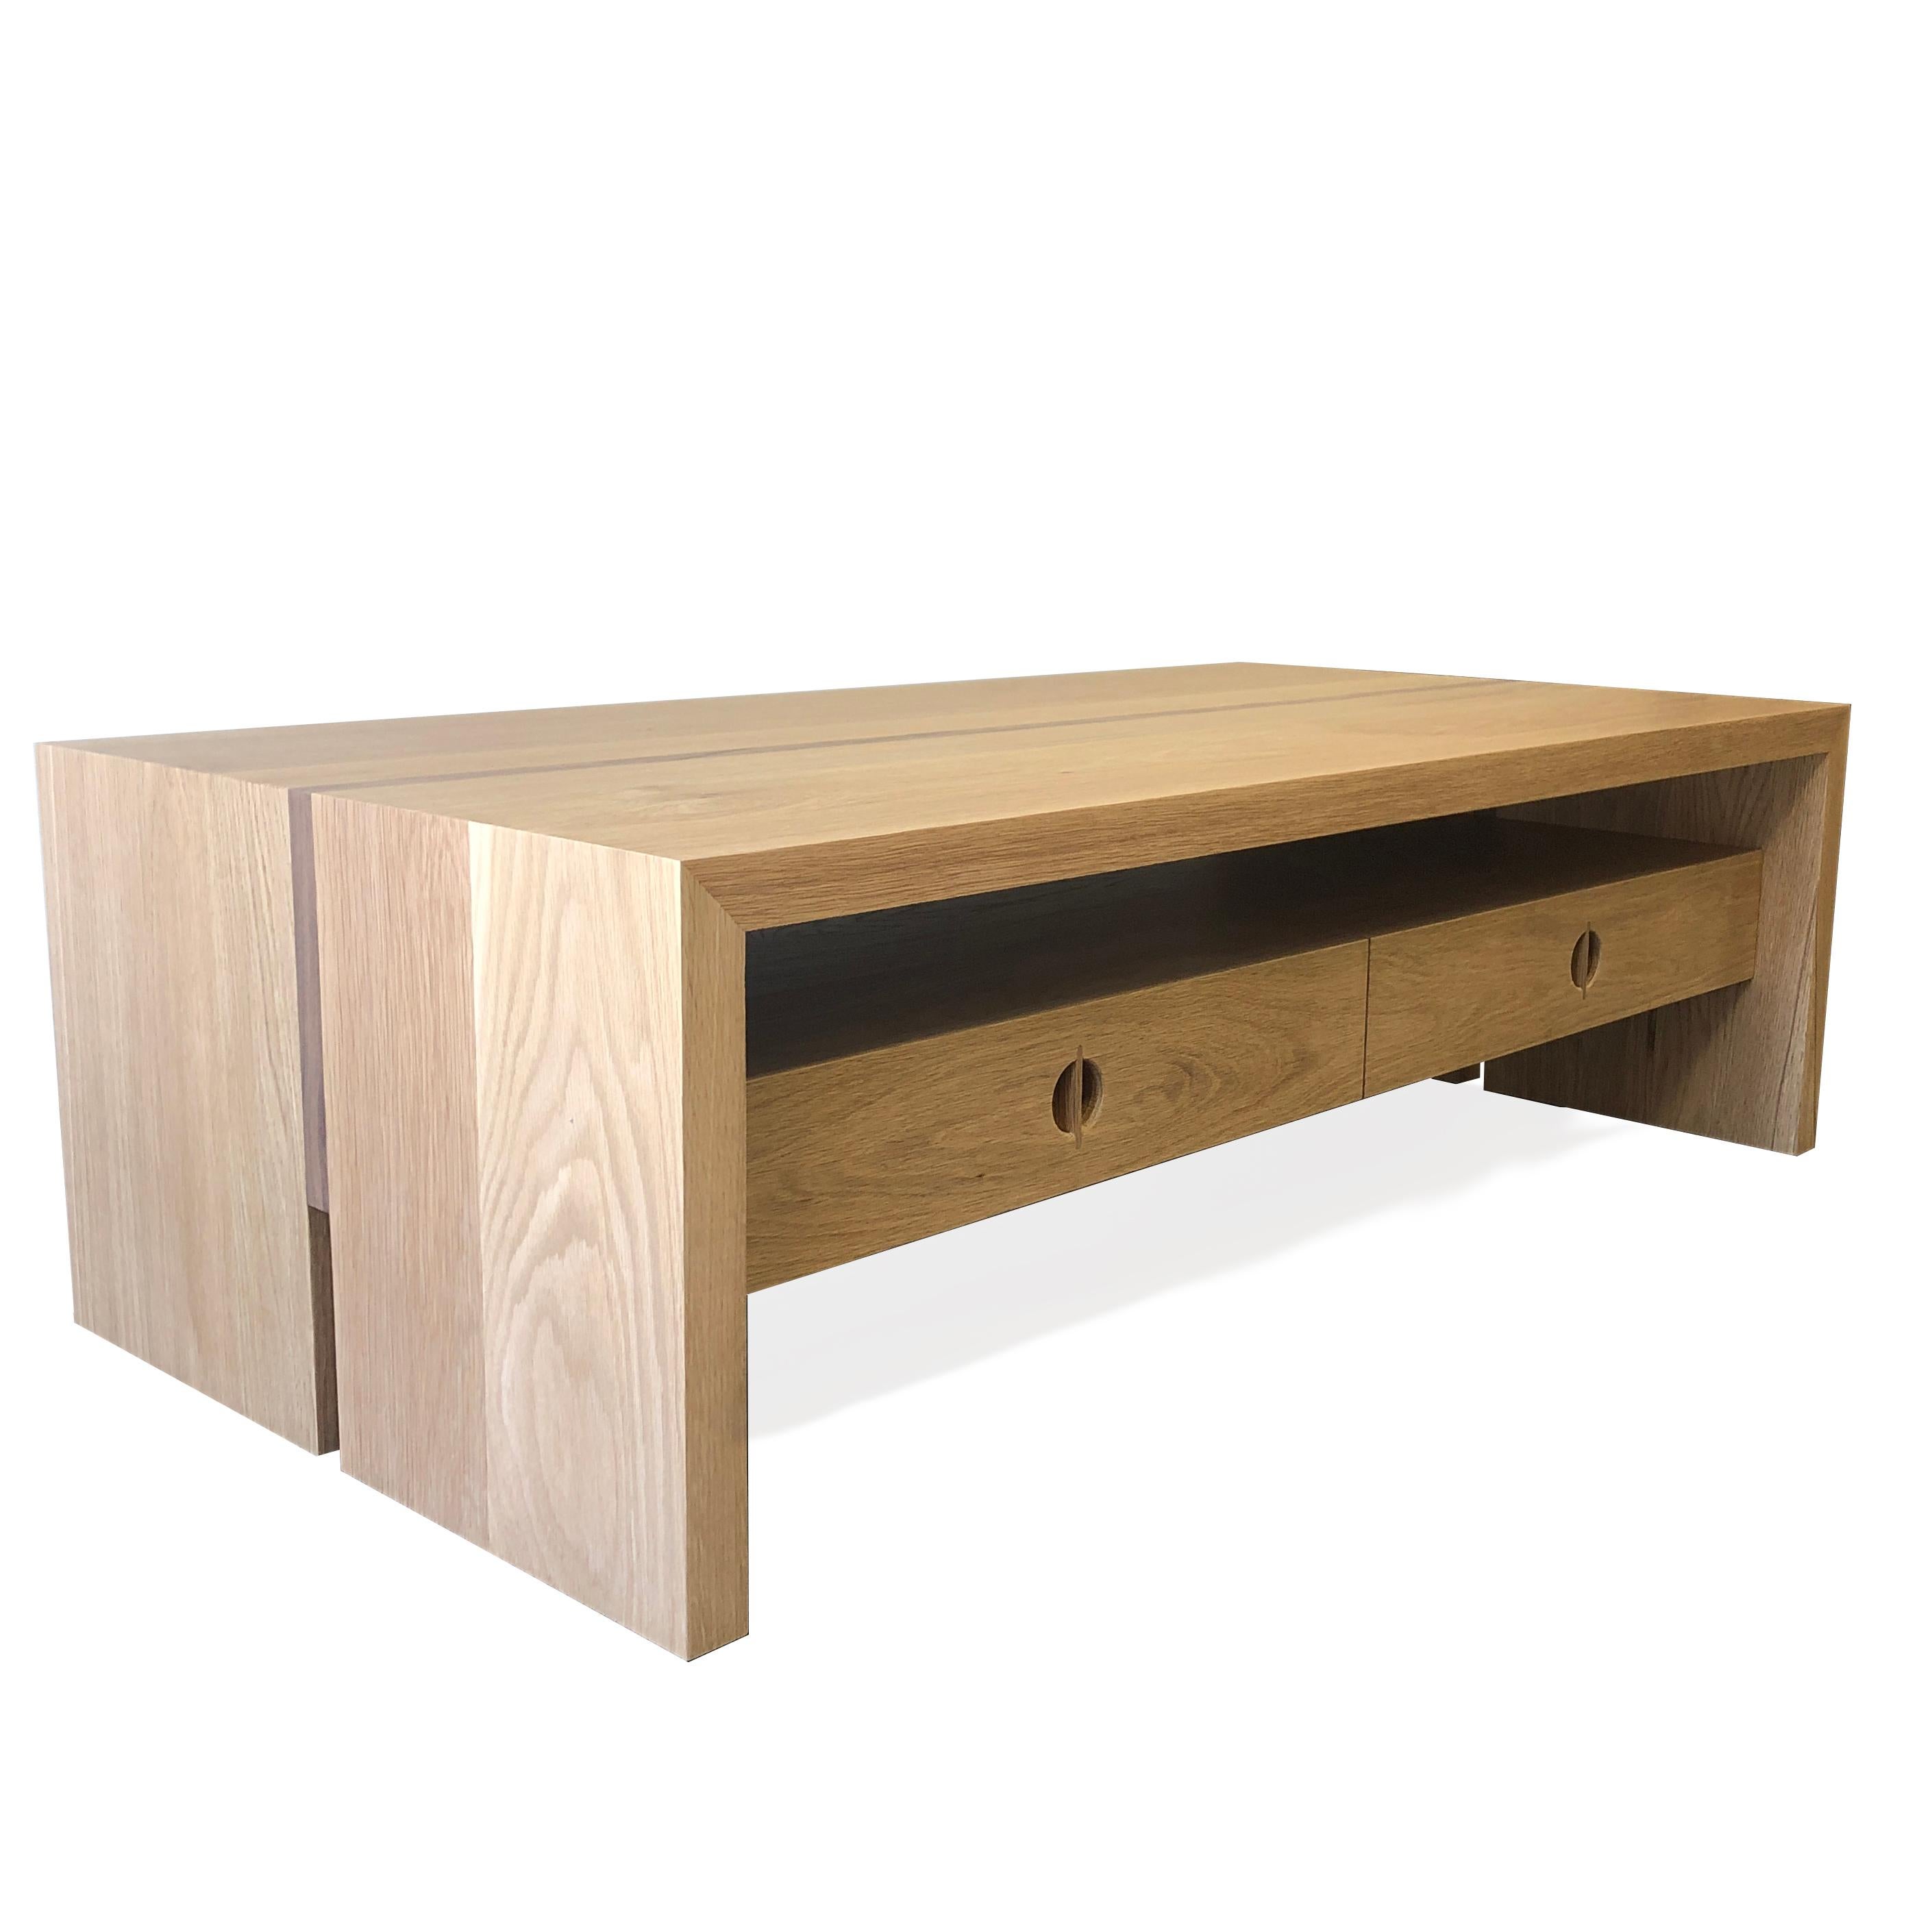 Cette table basse personnalisée est fabriquée à la main aux États-Unis avec du bois dur. Il présente un design carré moderne avec un corps en chêne blanc massif et un détail minimaliste de marqueterie en noyer. Les tiroirs de rangement pratiques et